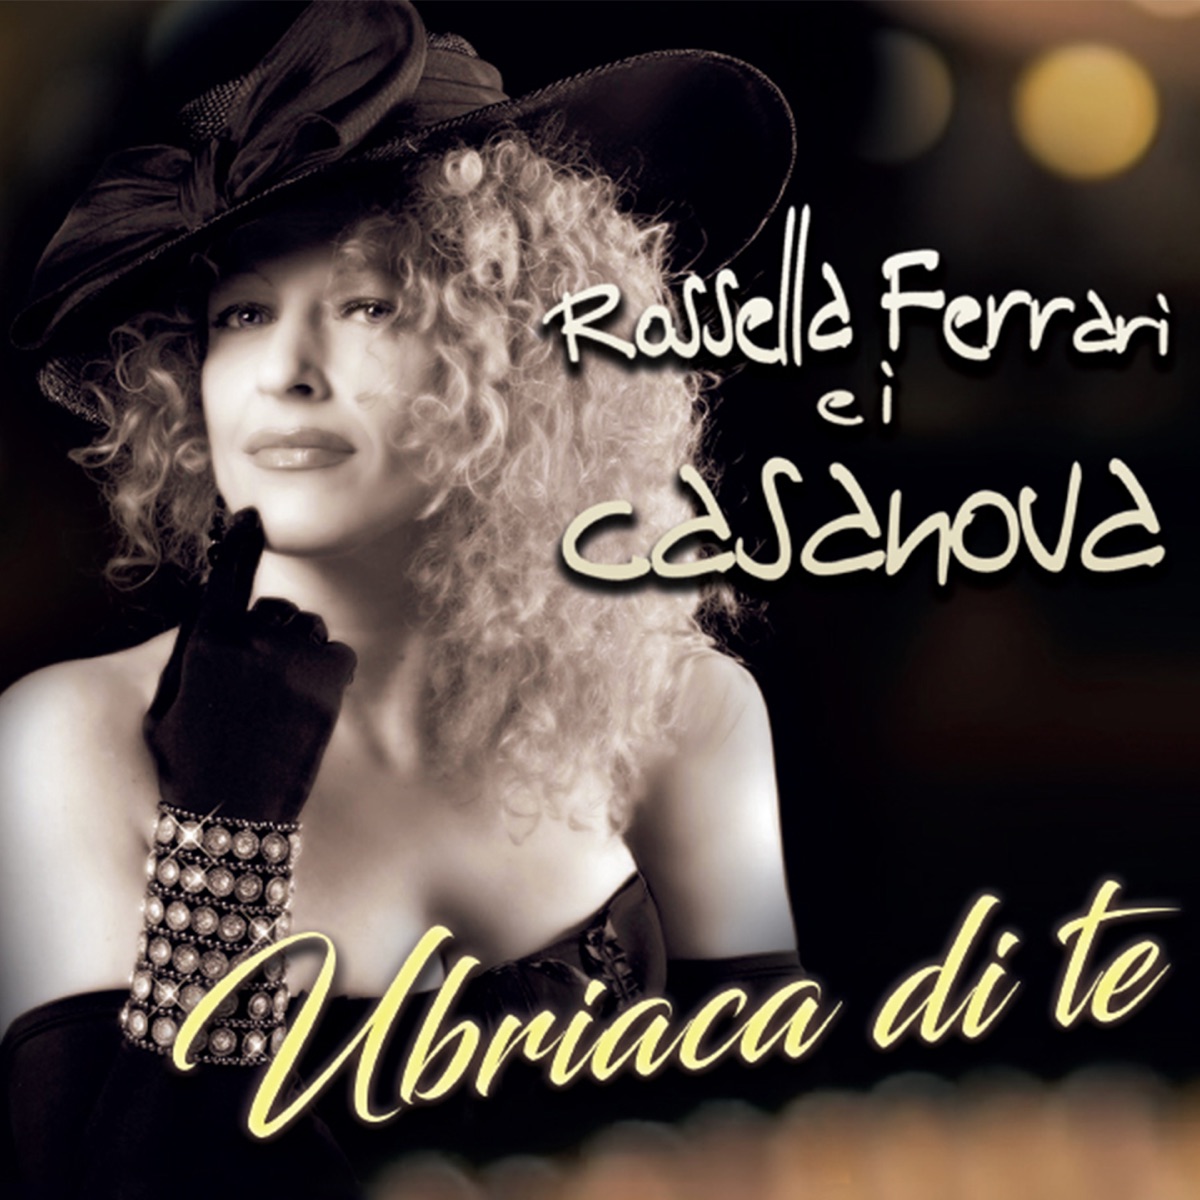 Mediterraneo - Album by Rossella Ferrari e i Casanova - Apple Music